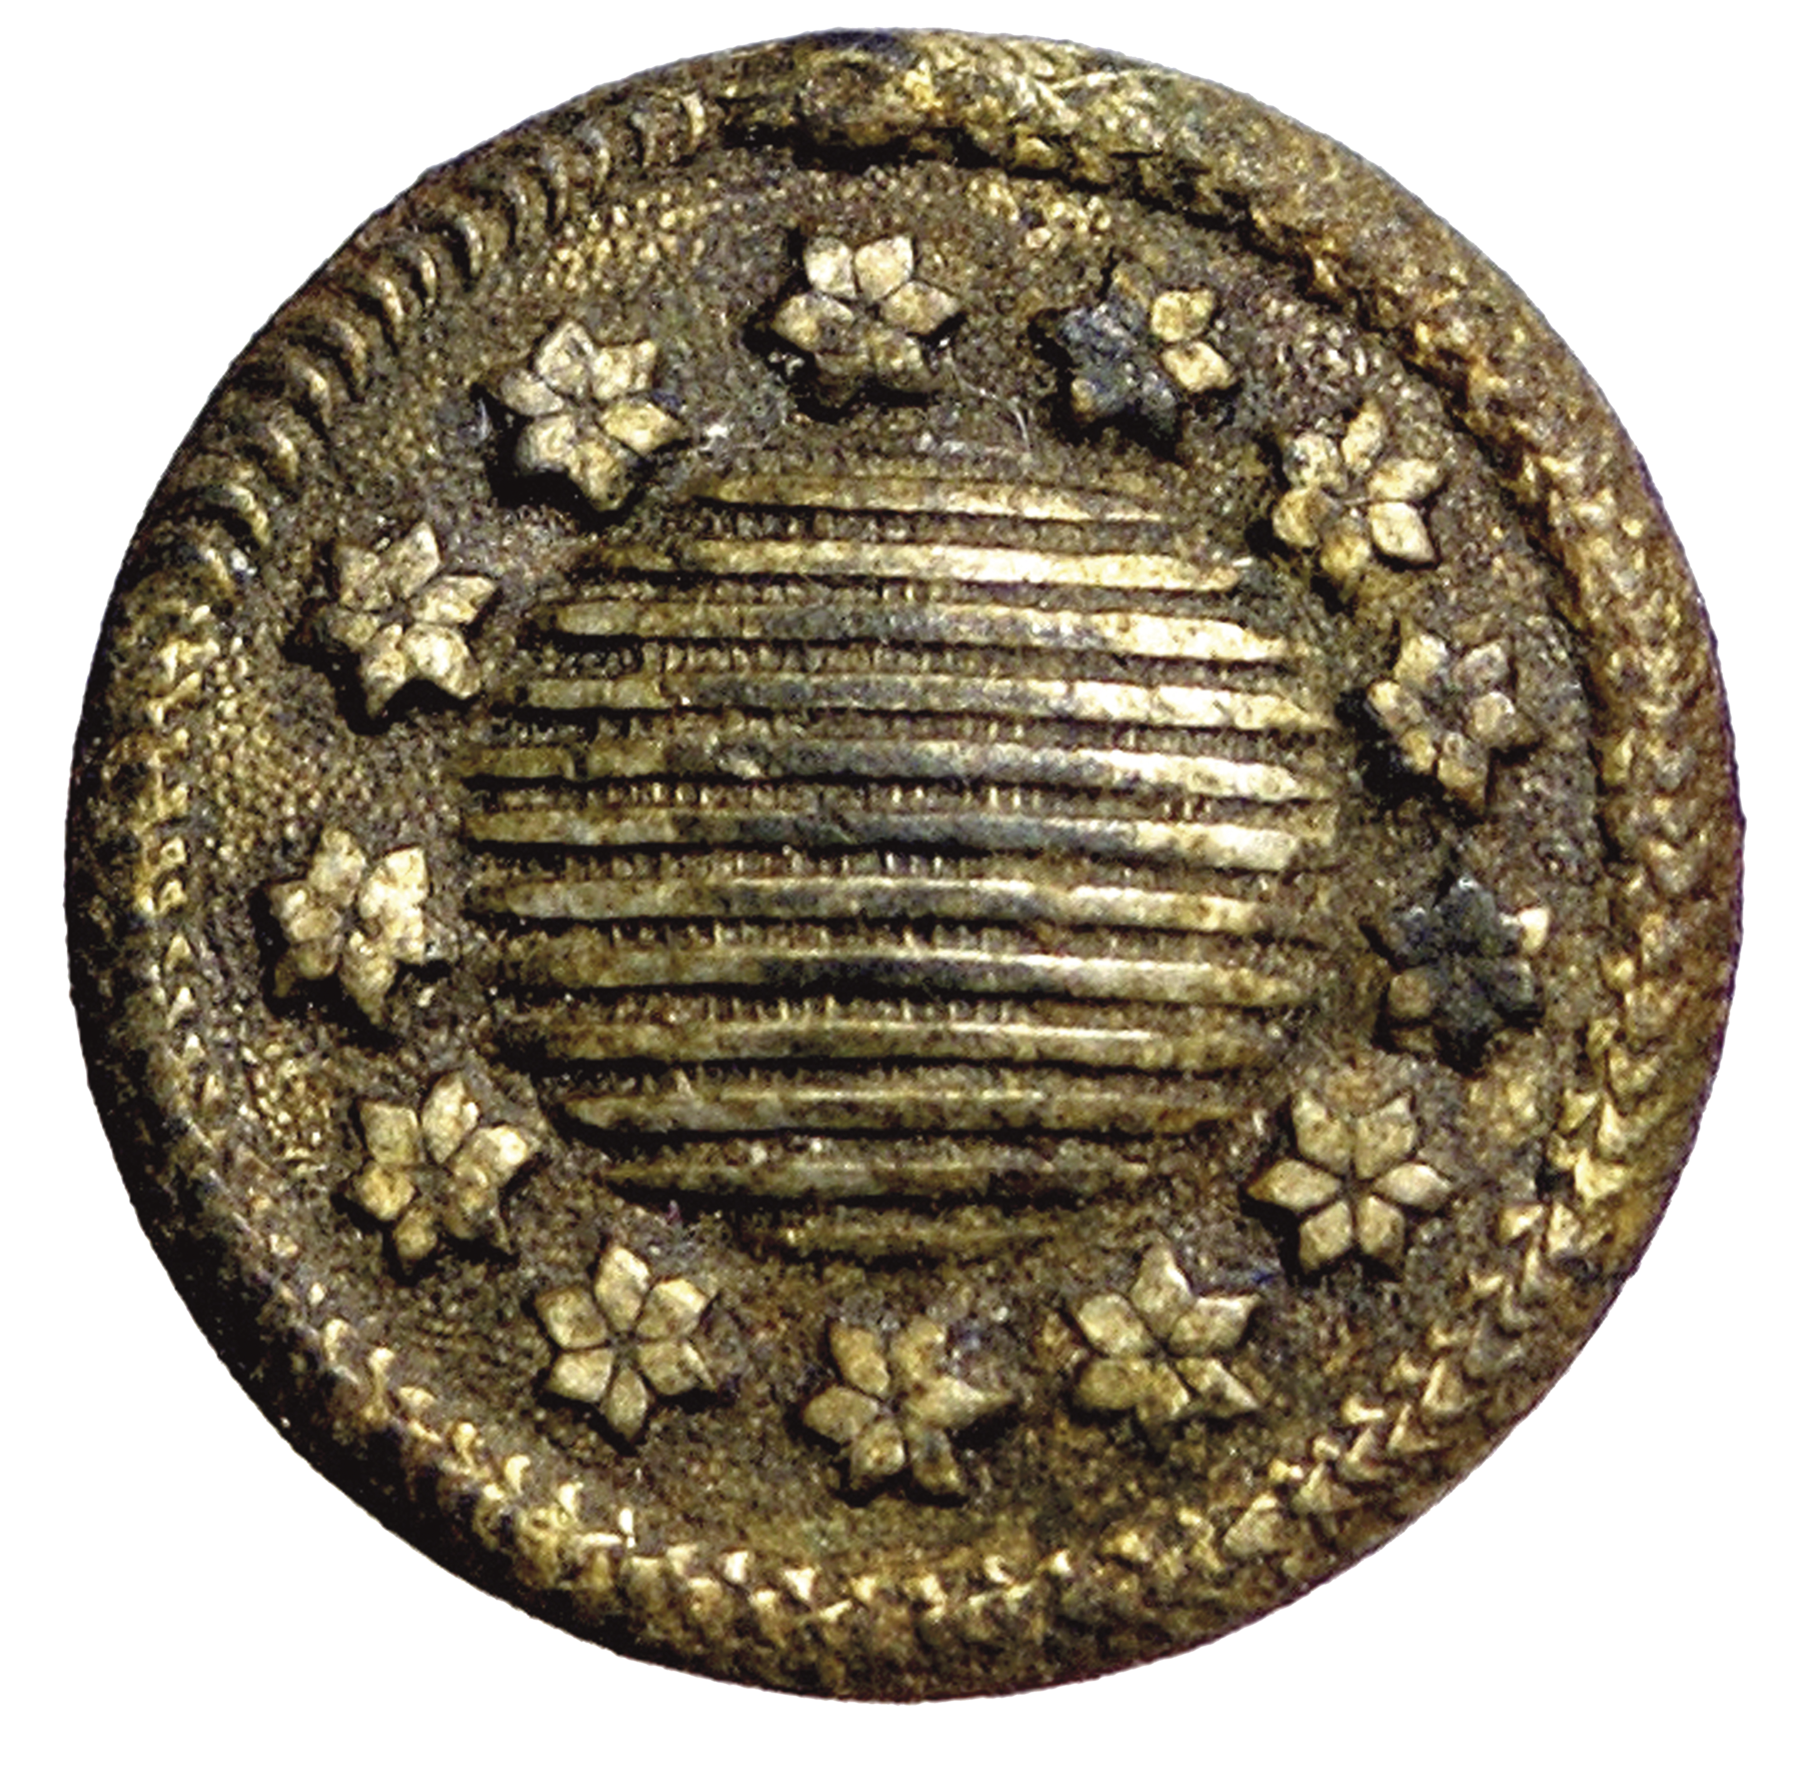 Fotografia. Botão de metal redondo com a representação de treze estrelas, em círculo, nas bordas do objeto e, no centro, outro círculo com listras horizontais.